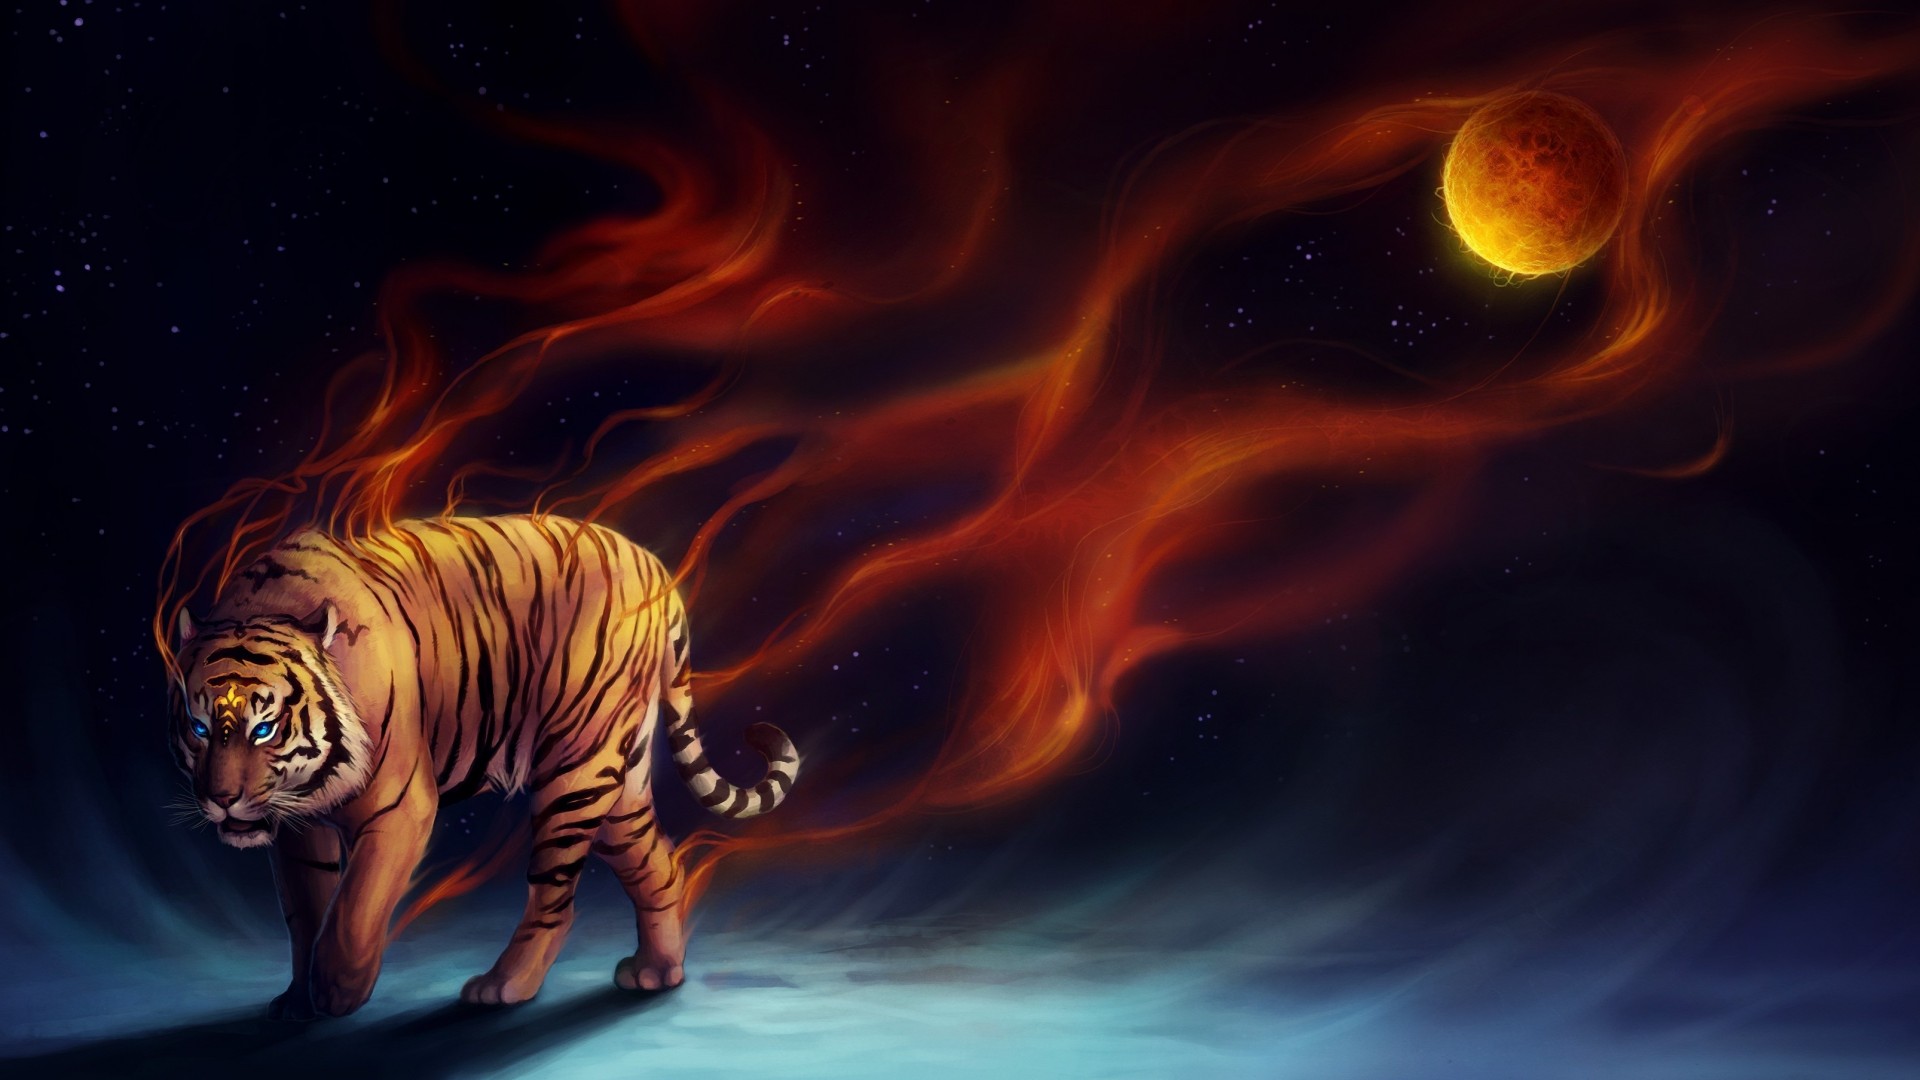 fire tiger wallpaper,bengal tiger,tiger,wildlife,felidae,big cats